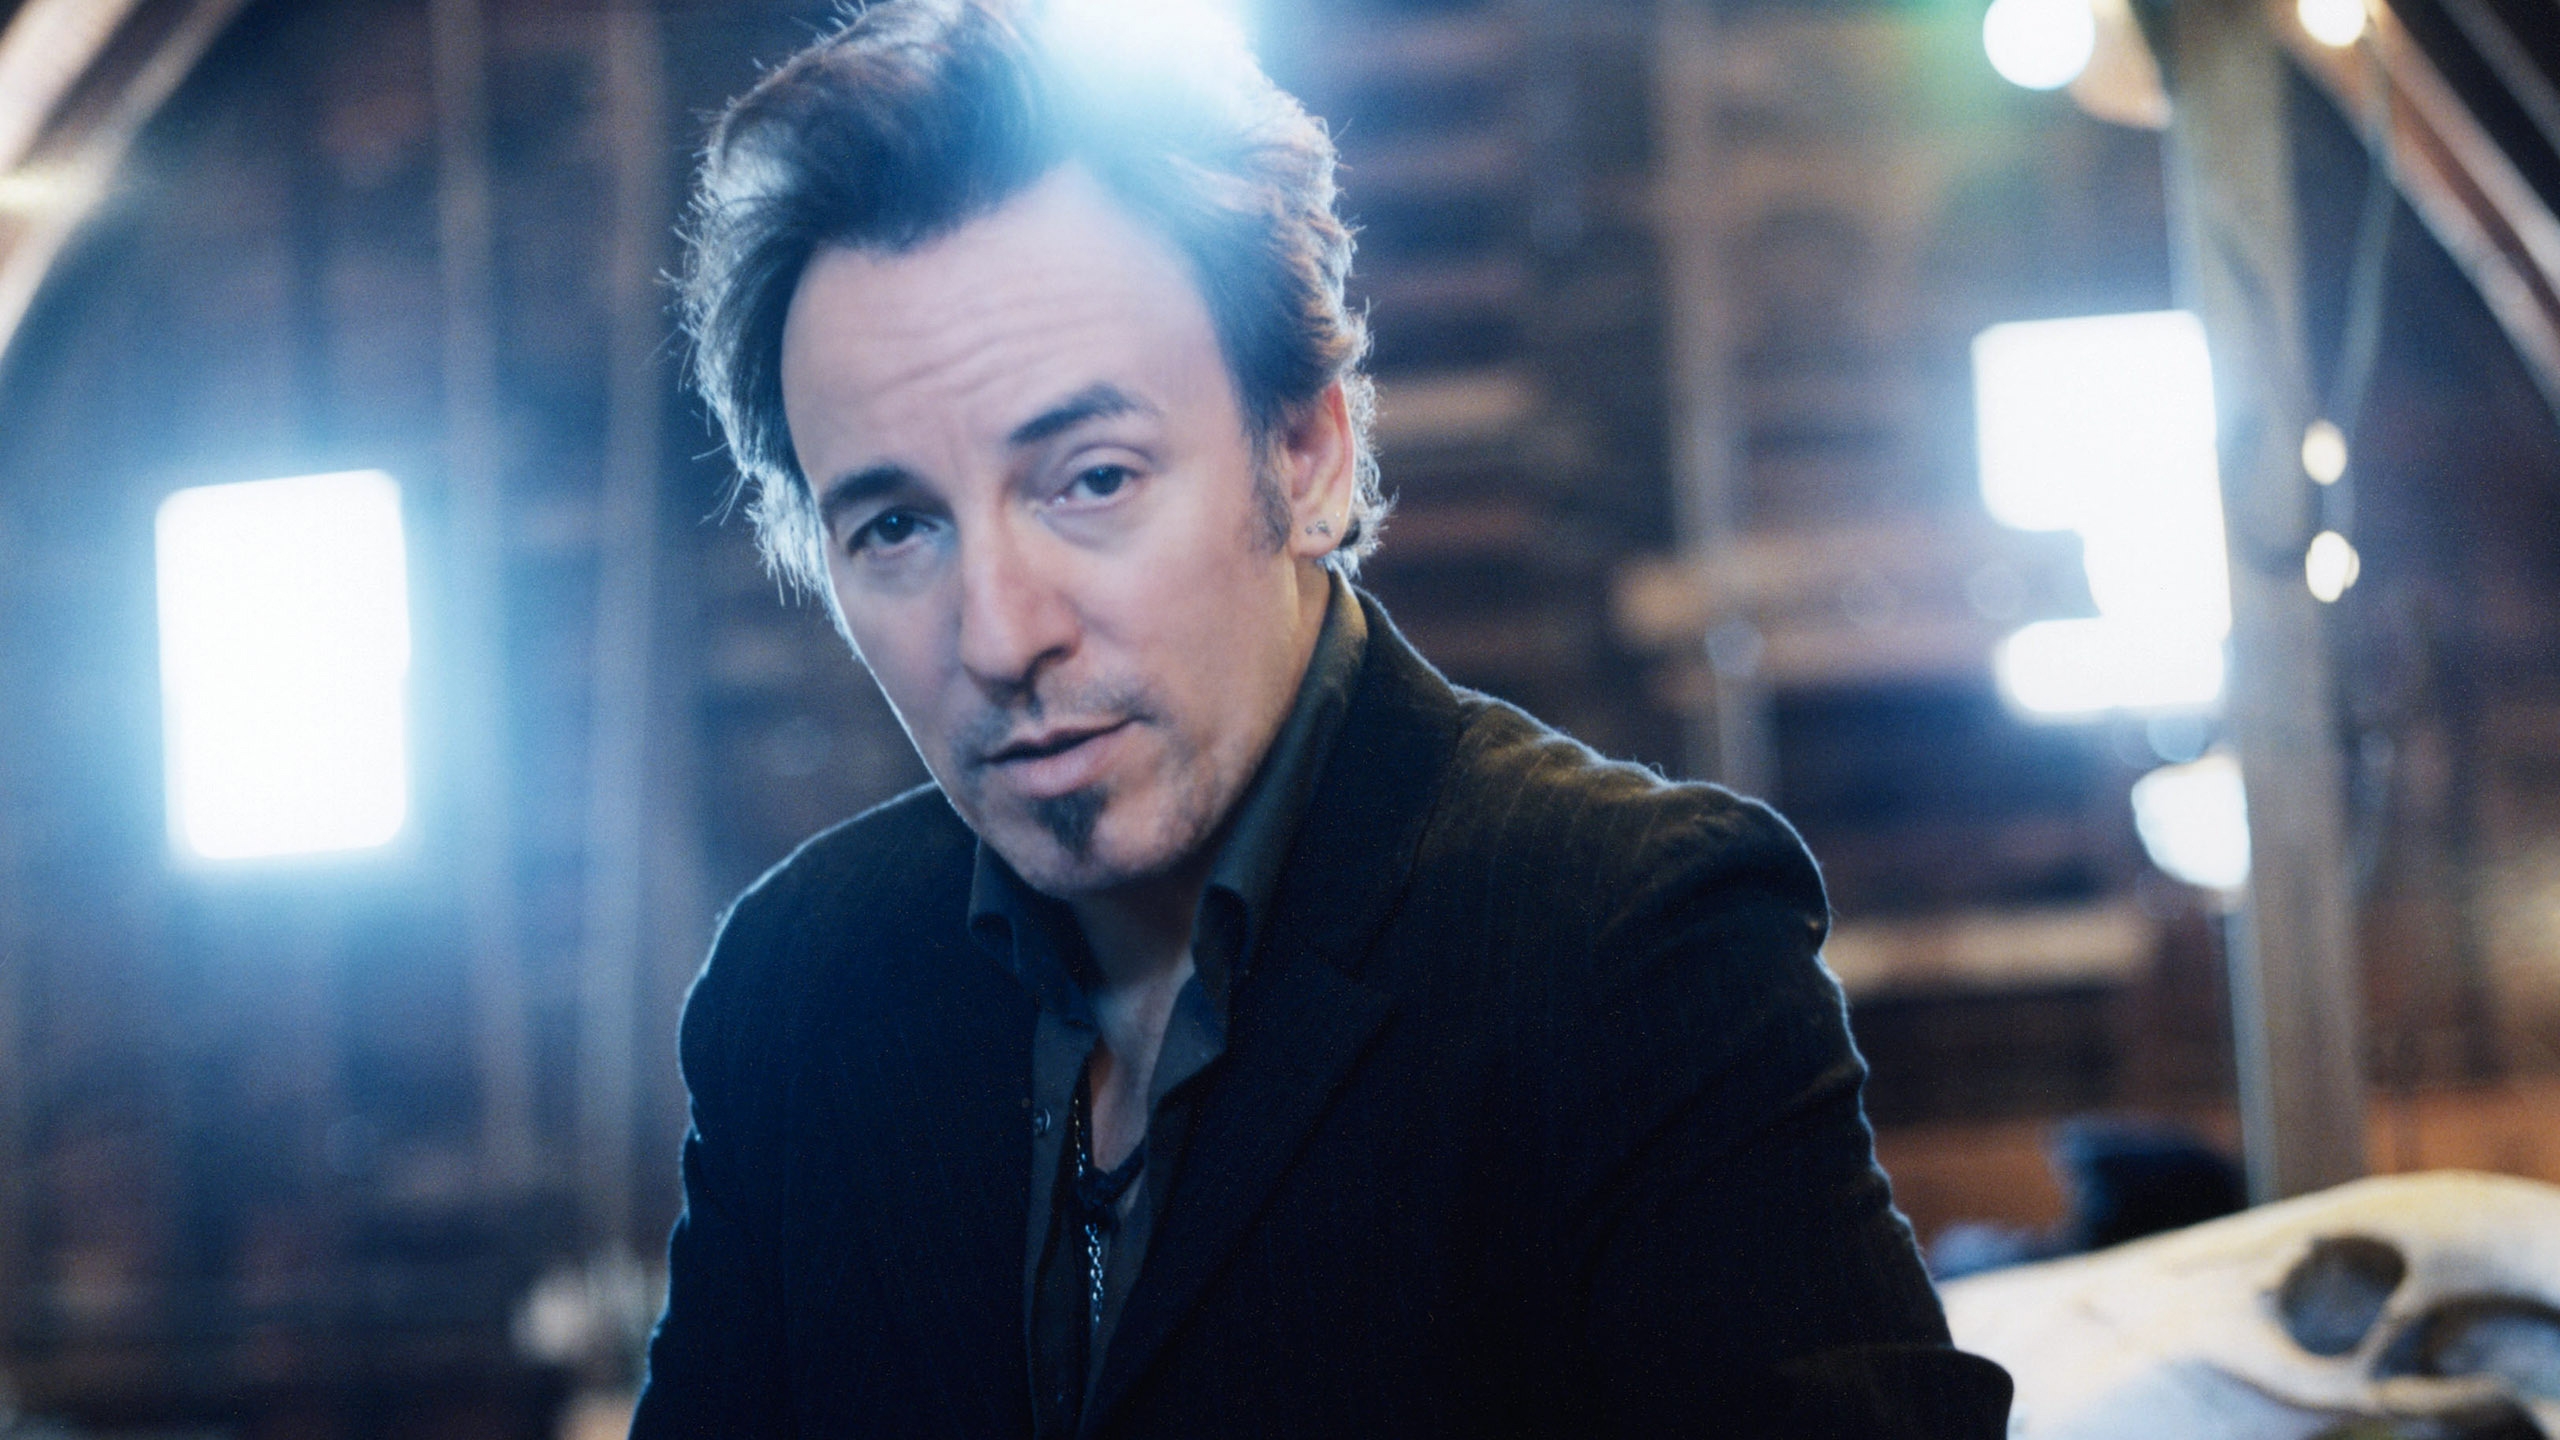 Bruce Springsteen for 2560x1440 HDTV resolution